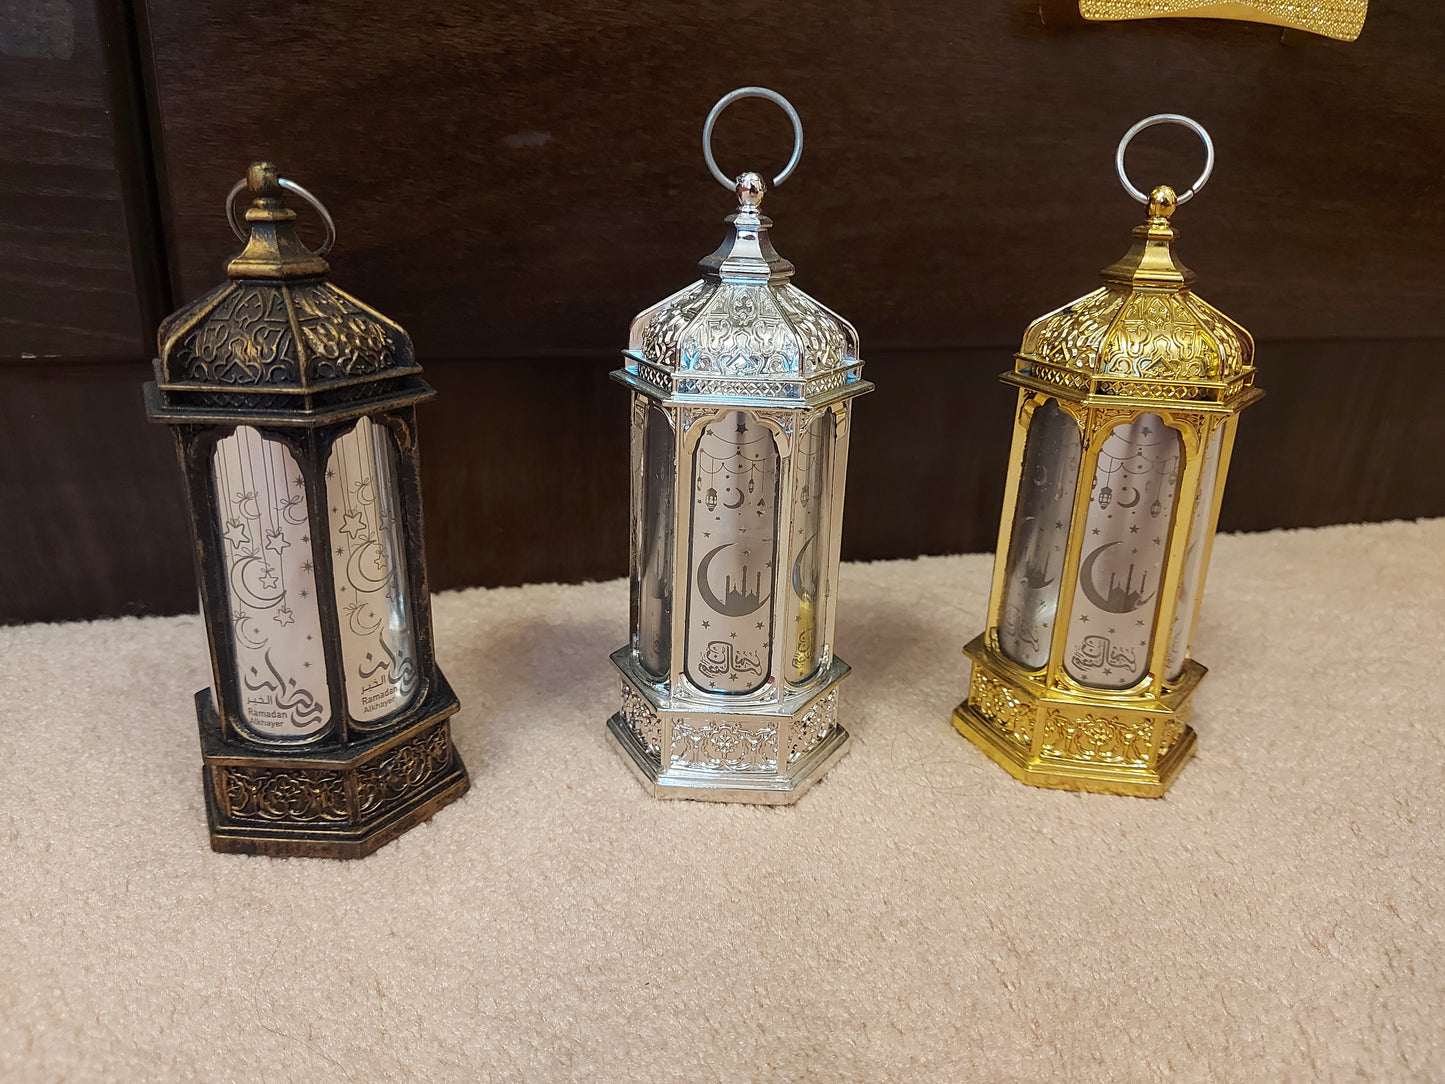 Ramadan Lantern in 3 colors